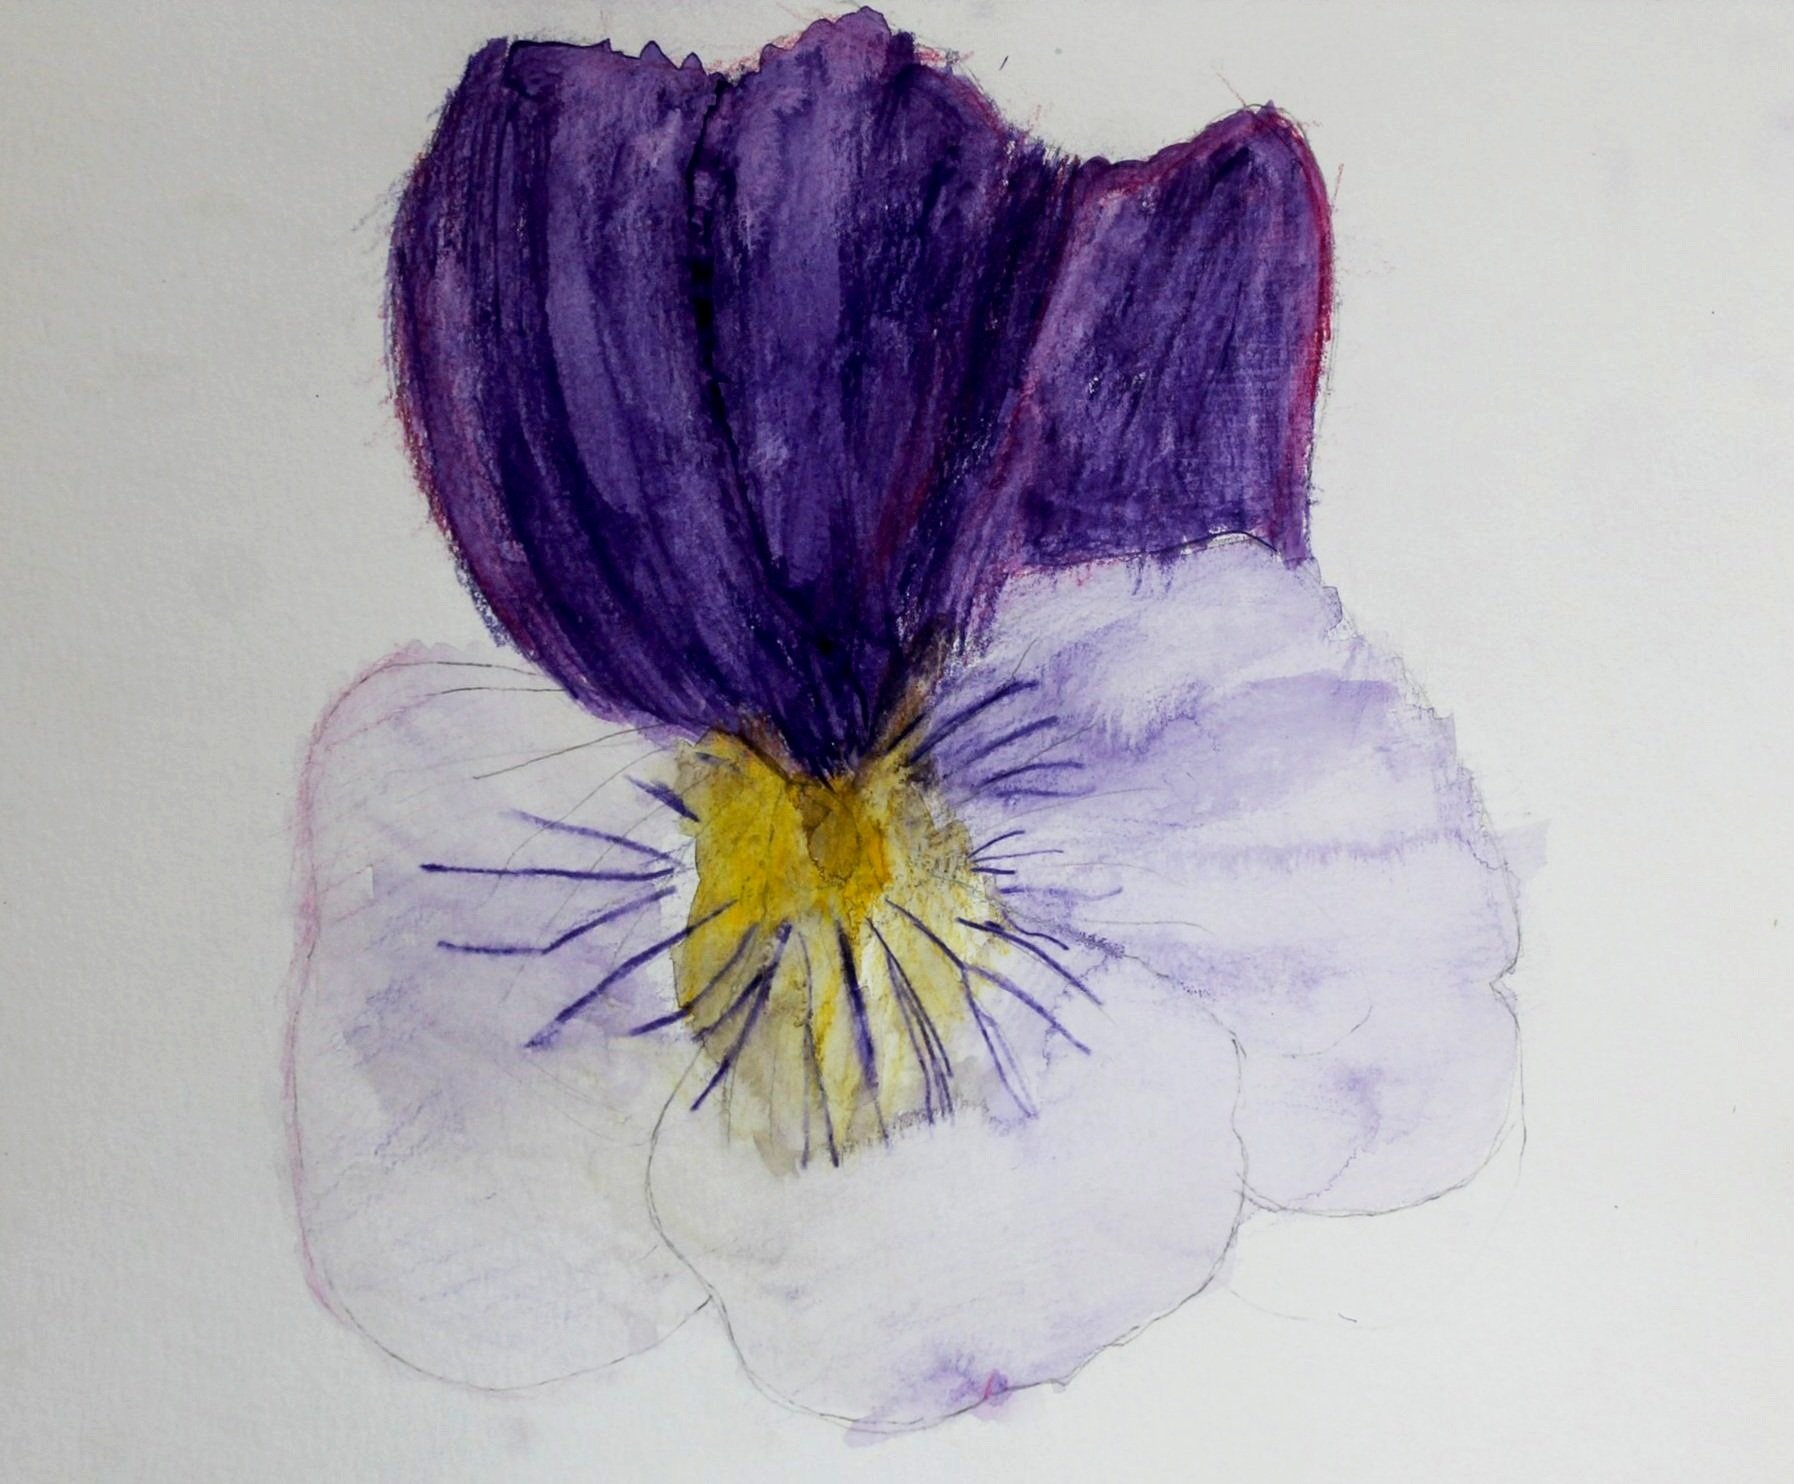 F.R., age 9, watercolor pencil